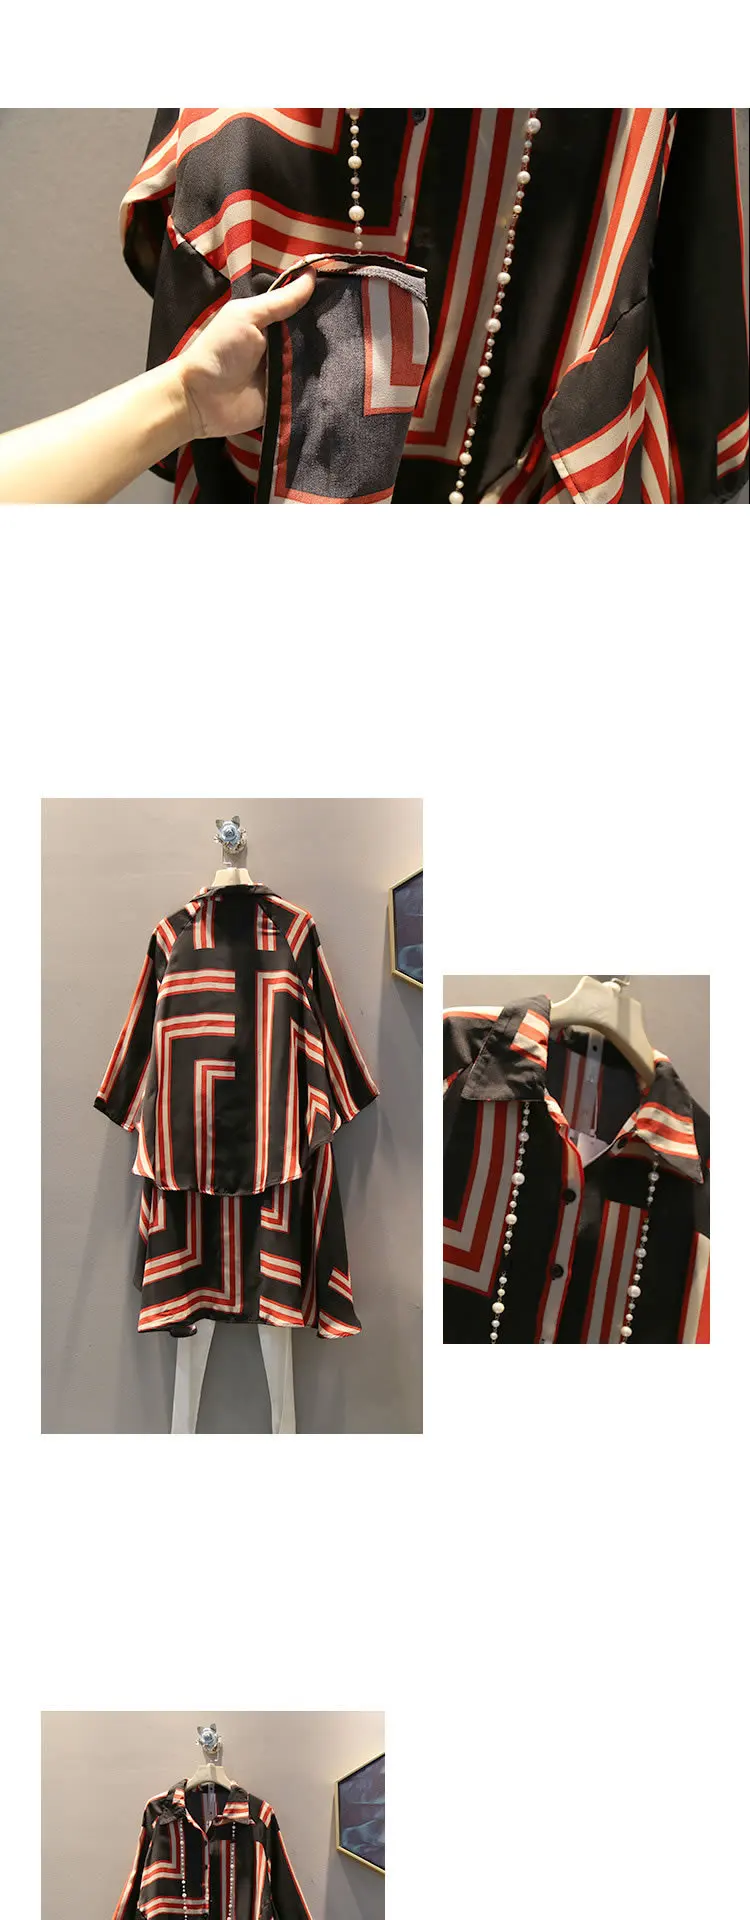 Tvvovviny Tide/рубашка в клетку с асимметричным узором, женская одежда 2019, плюс размер, Тонкая блузка, отложной воротник, подходит для осени F636